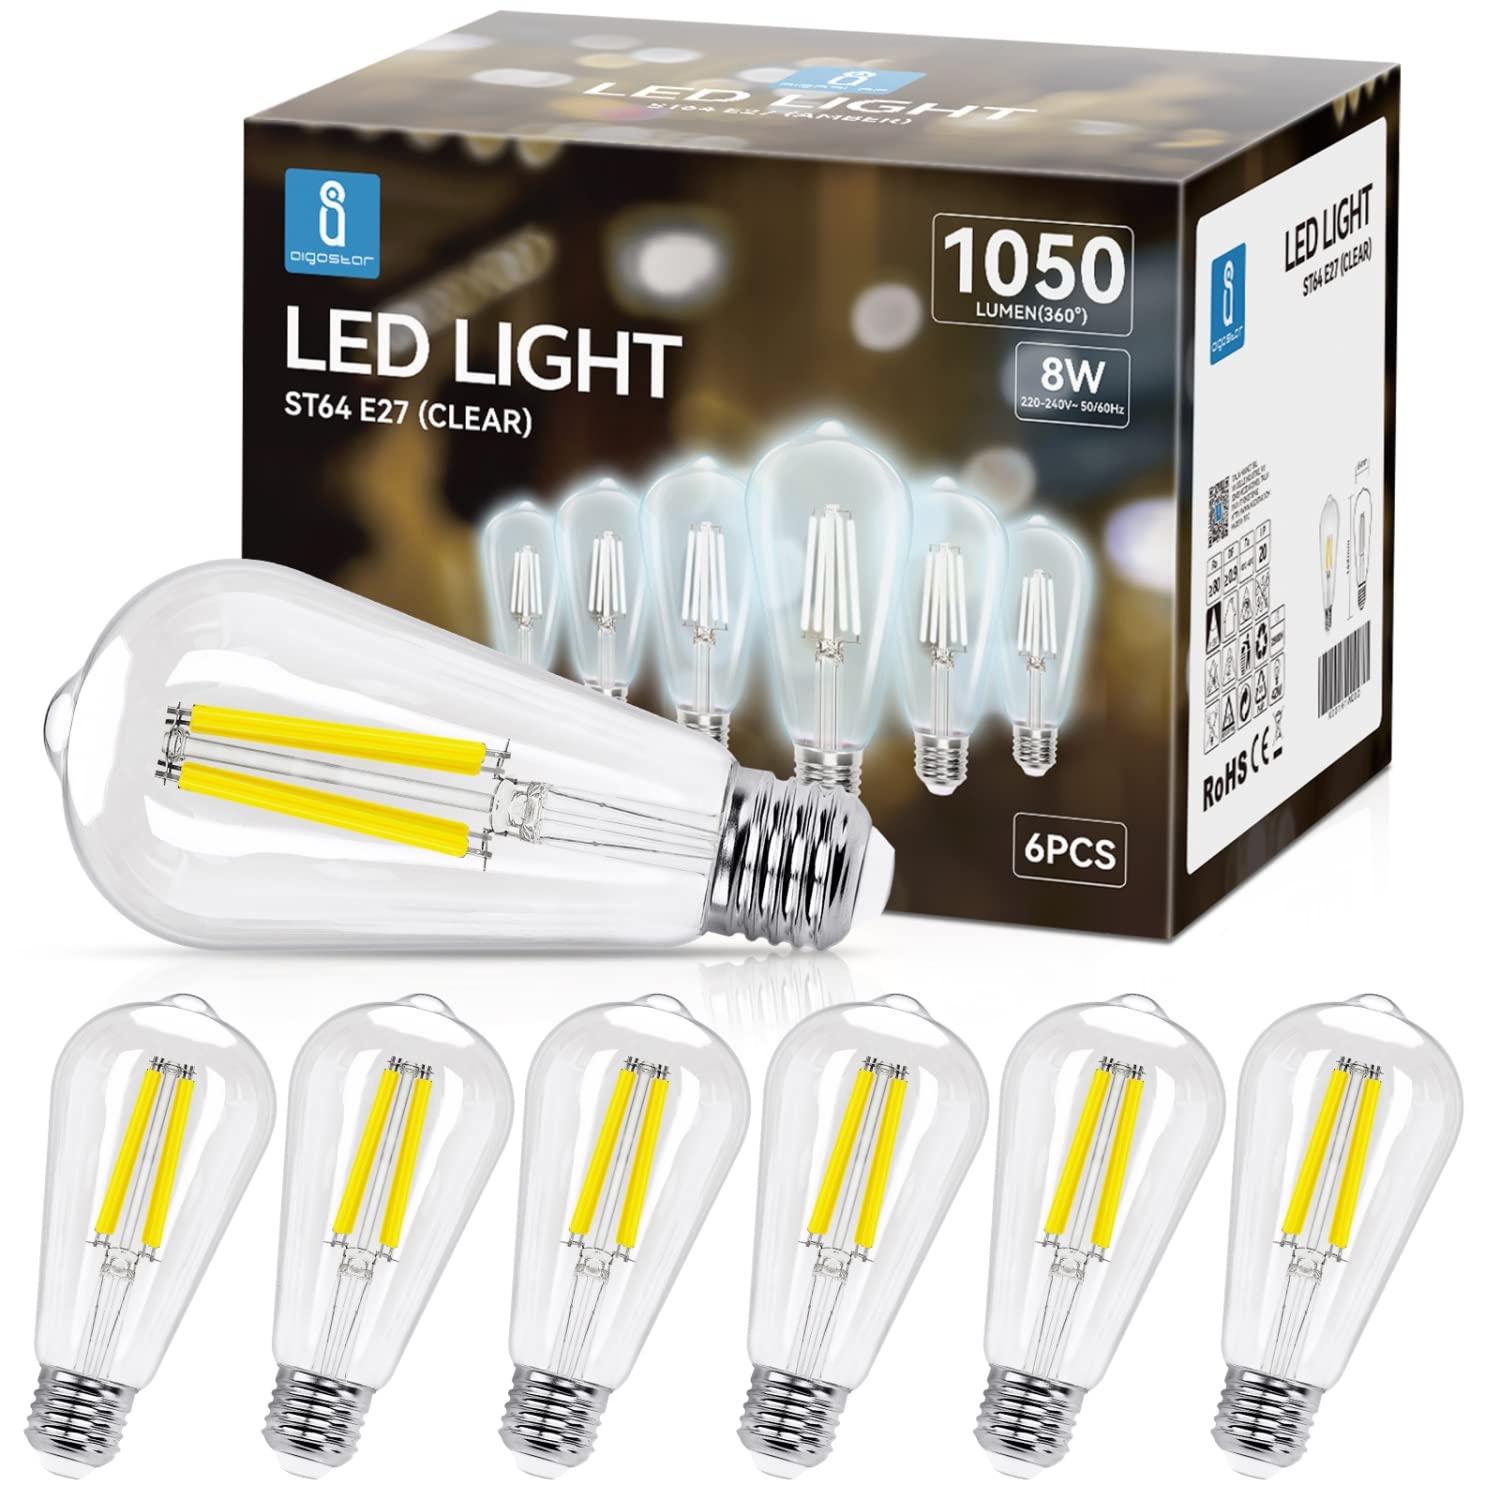 Aigostar E27 Filament LED Lampe 8 W (Ersetzt 75W),Kaltweiß 6500K,1050 Lumen,ST64 Leuchtmittel,Nicht dimmbar,6 Stück